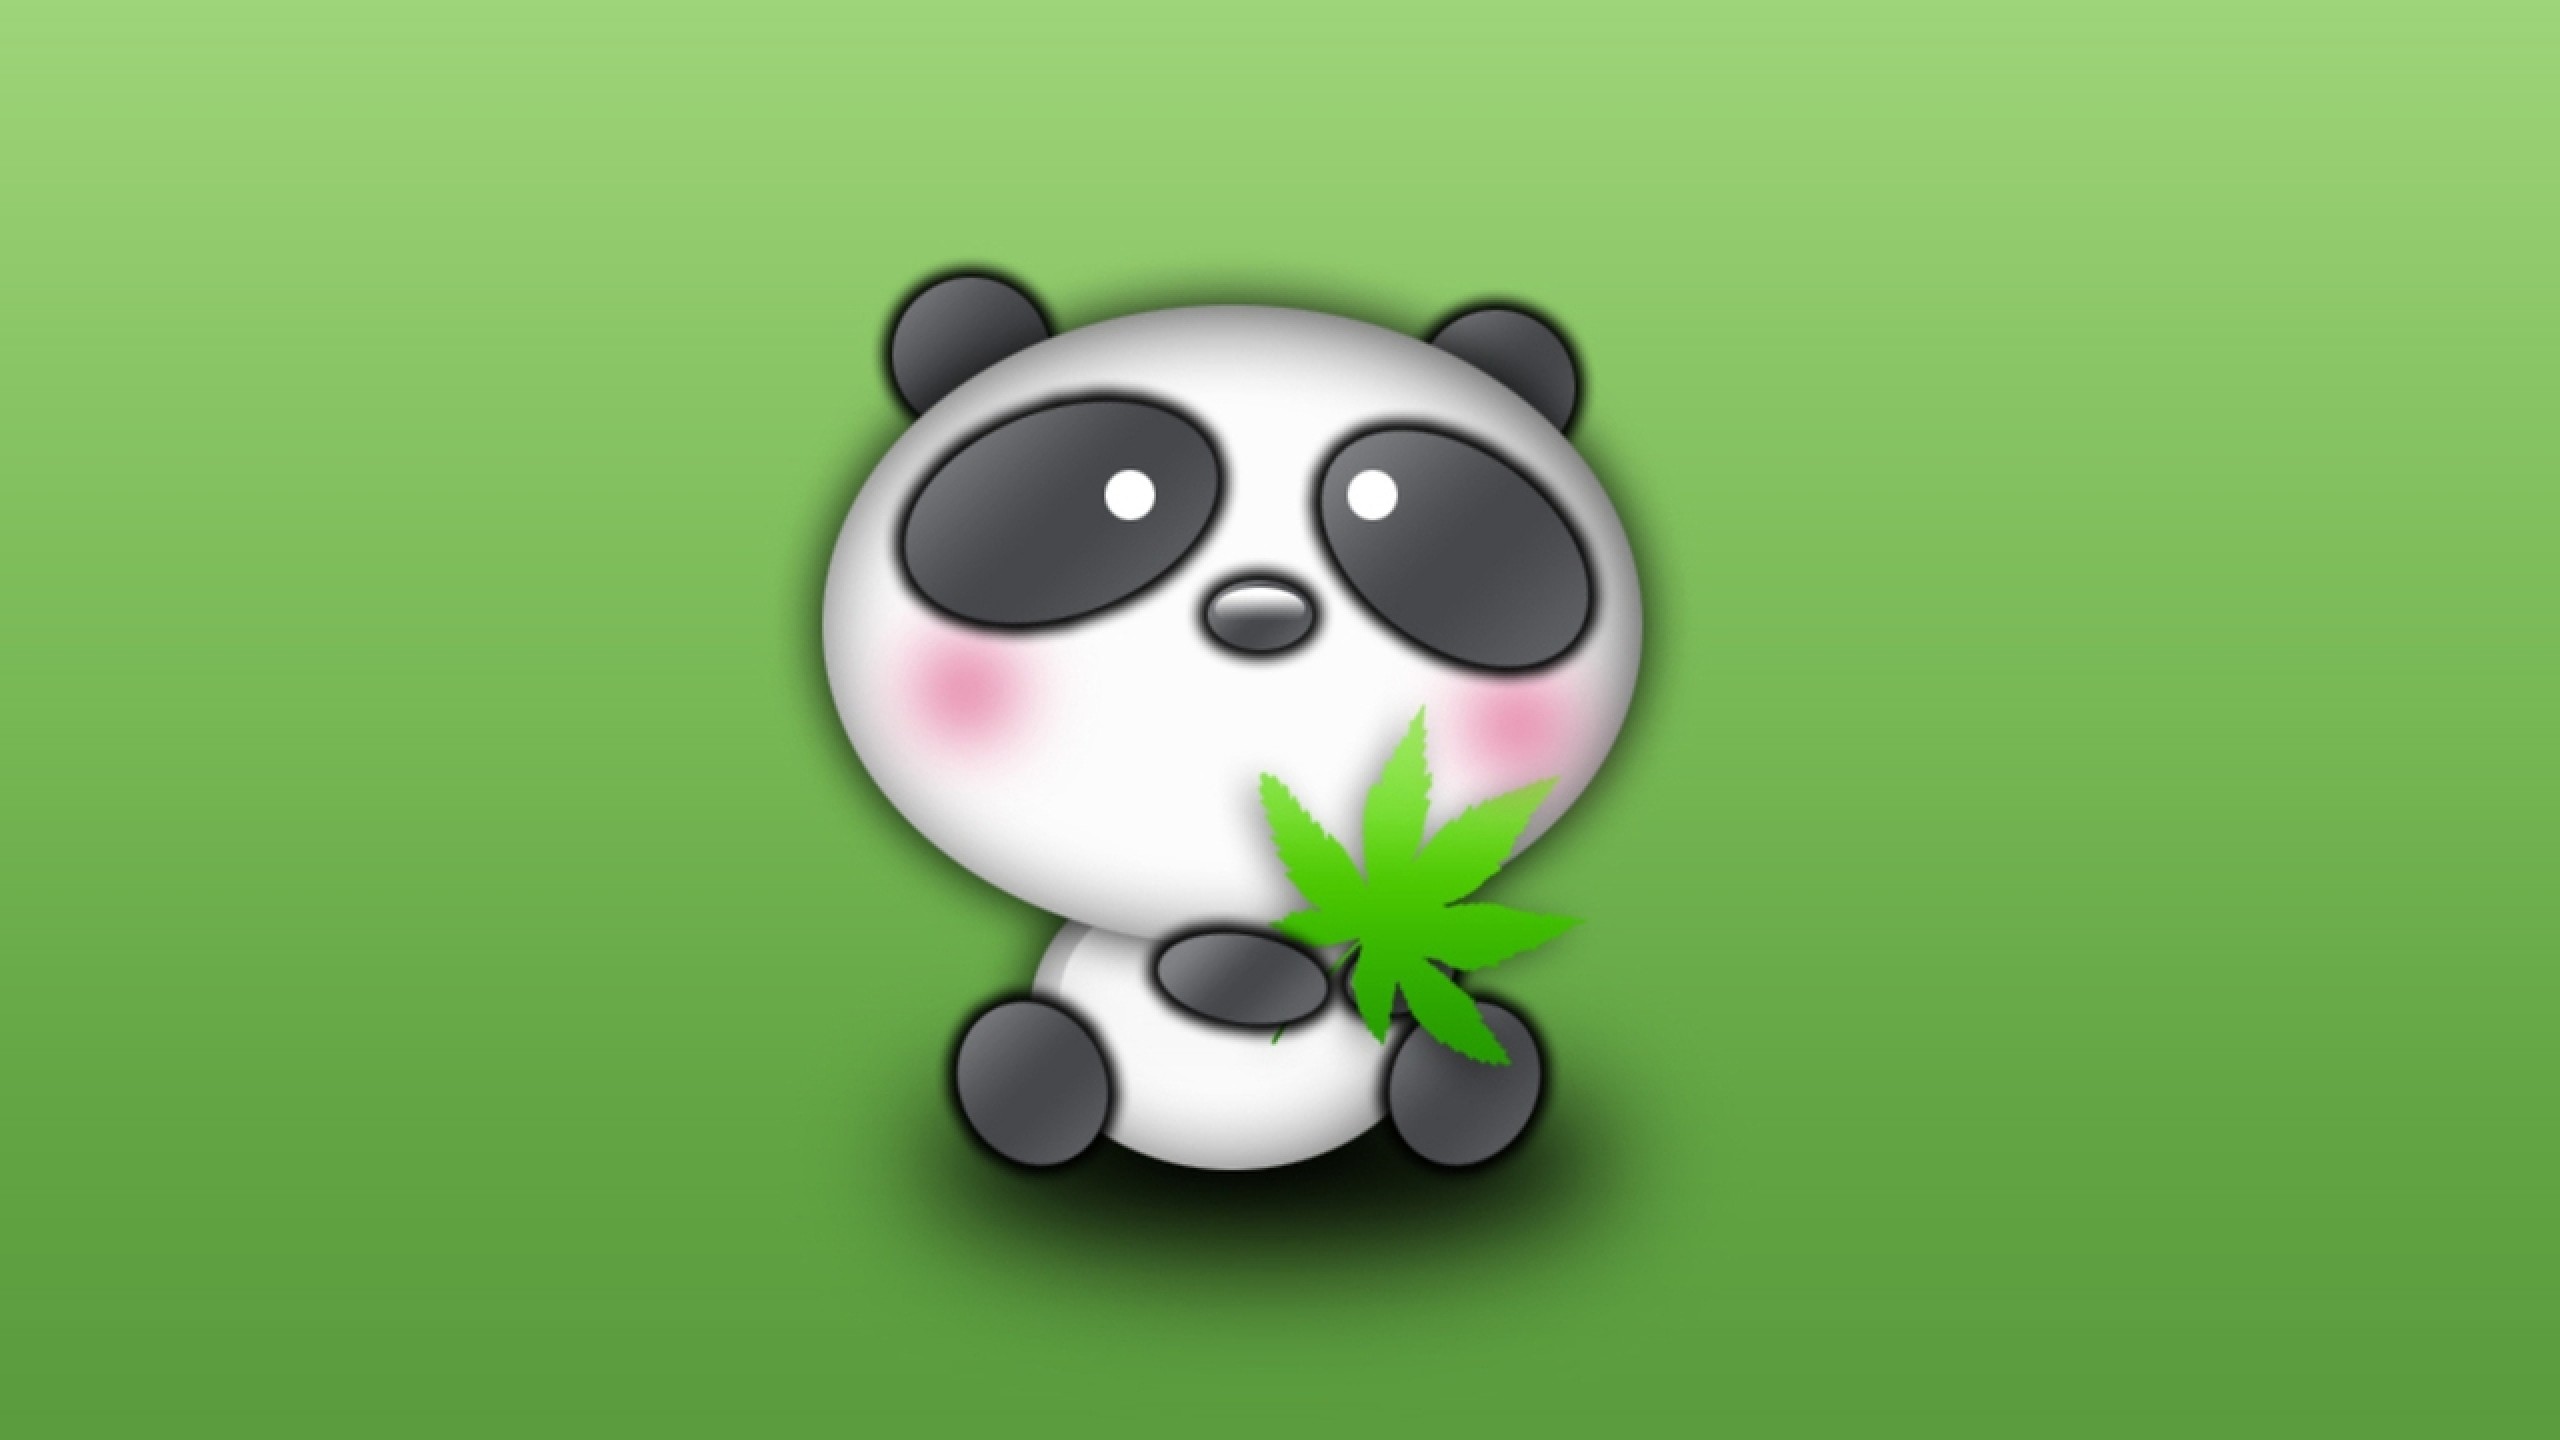 Free download Cute Panda Cartoon Desktop Wallpaper Cute amp Funny Things  [2560x1440] for your Desktop, Mobile & Tablet | Explore 75+ Panda Cartoon  Wallpaper | Panda Wallpaper, Cartoon Panda Wallpaper, Panda Bear Wallpaper